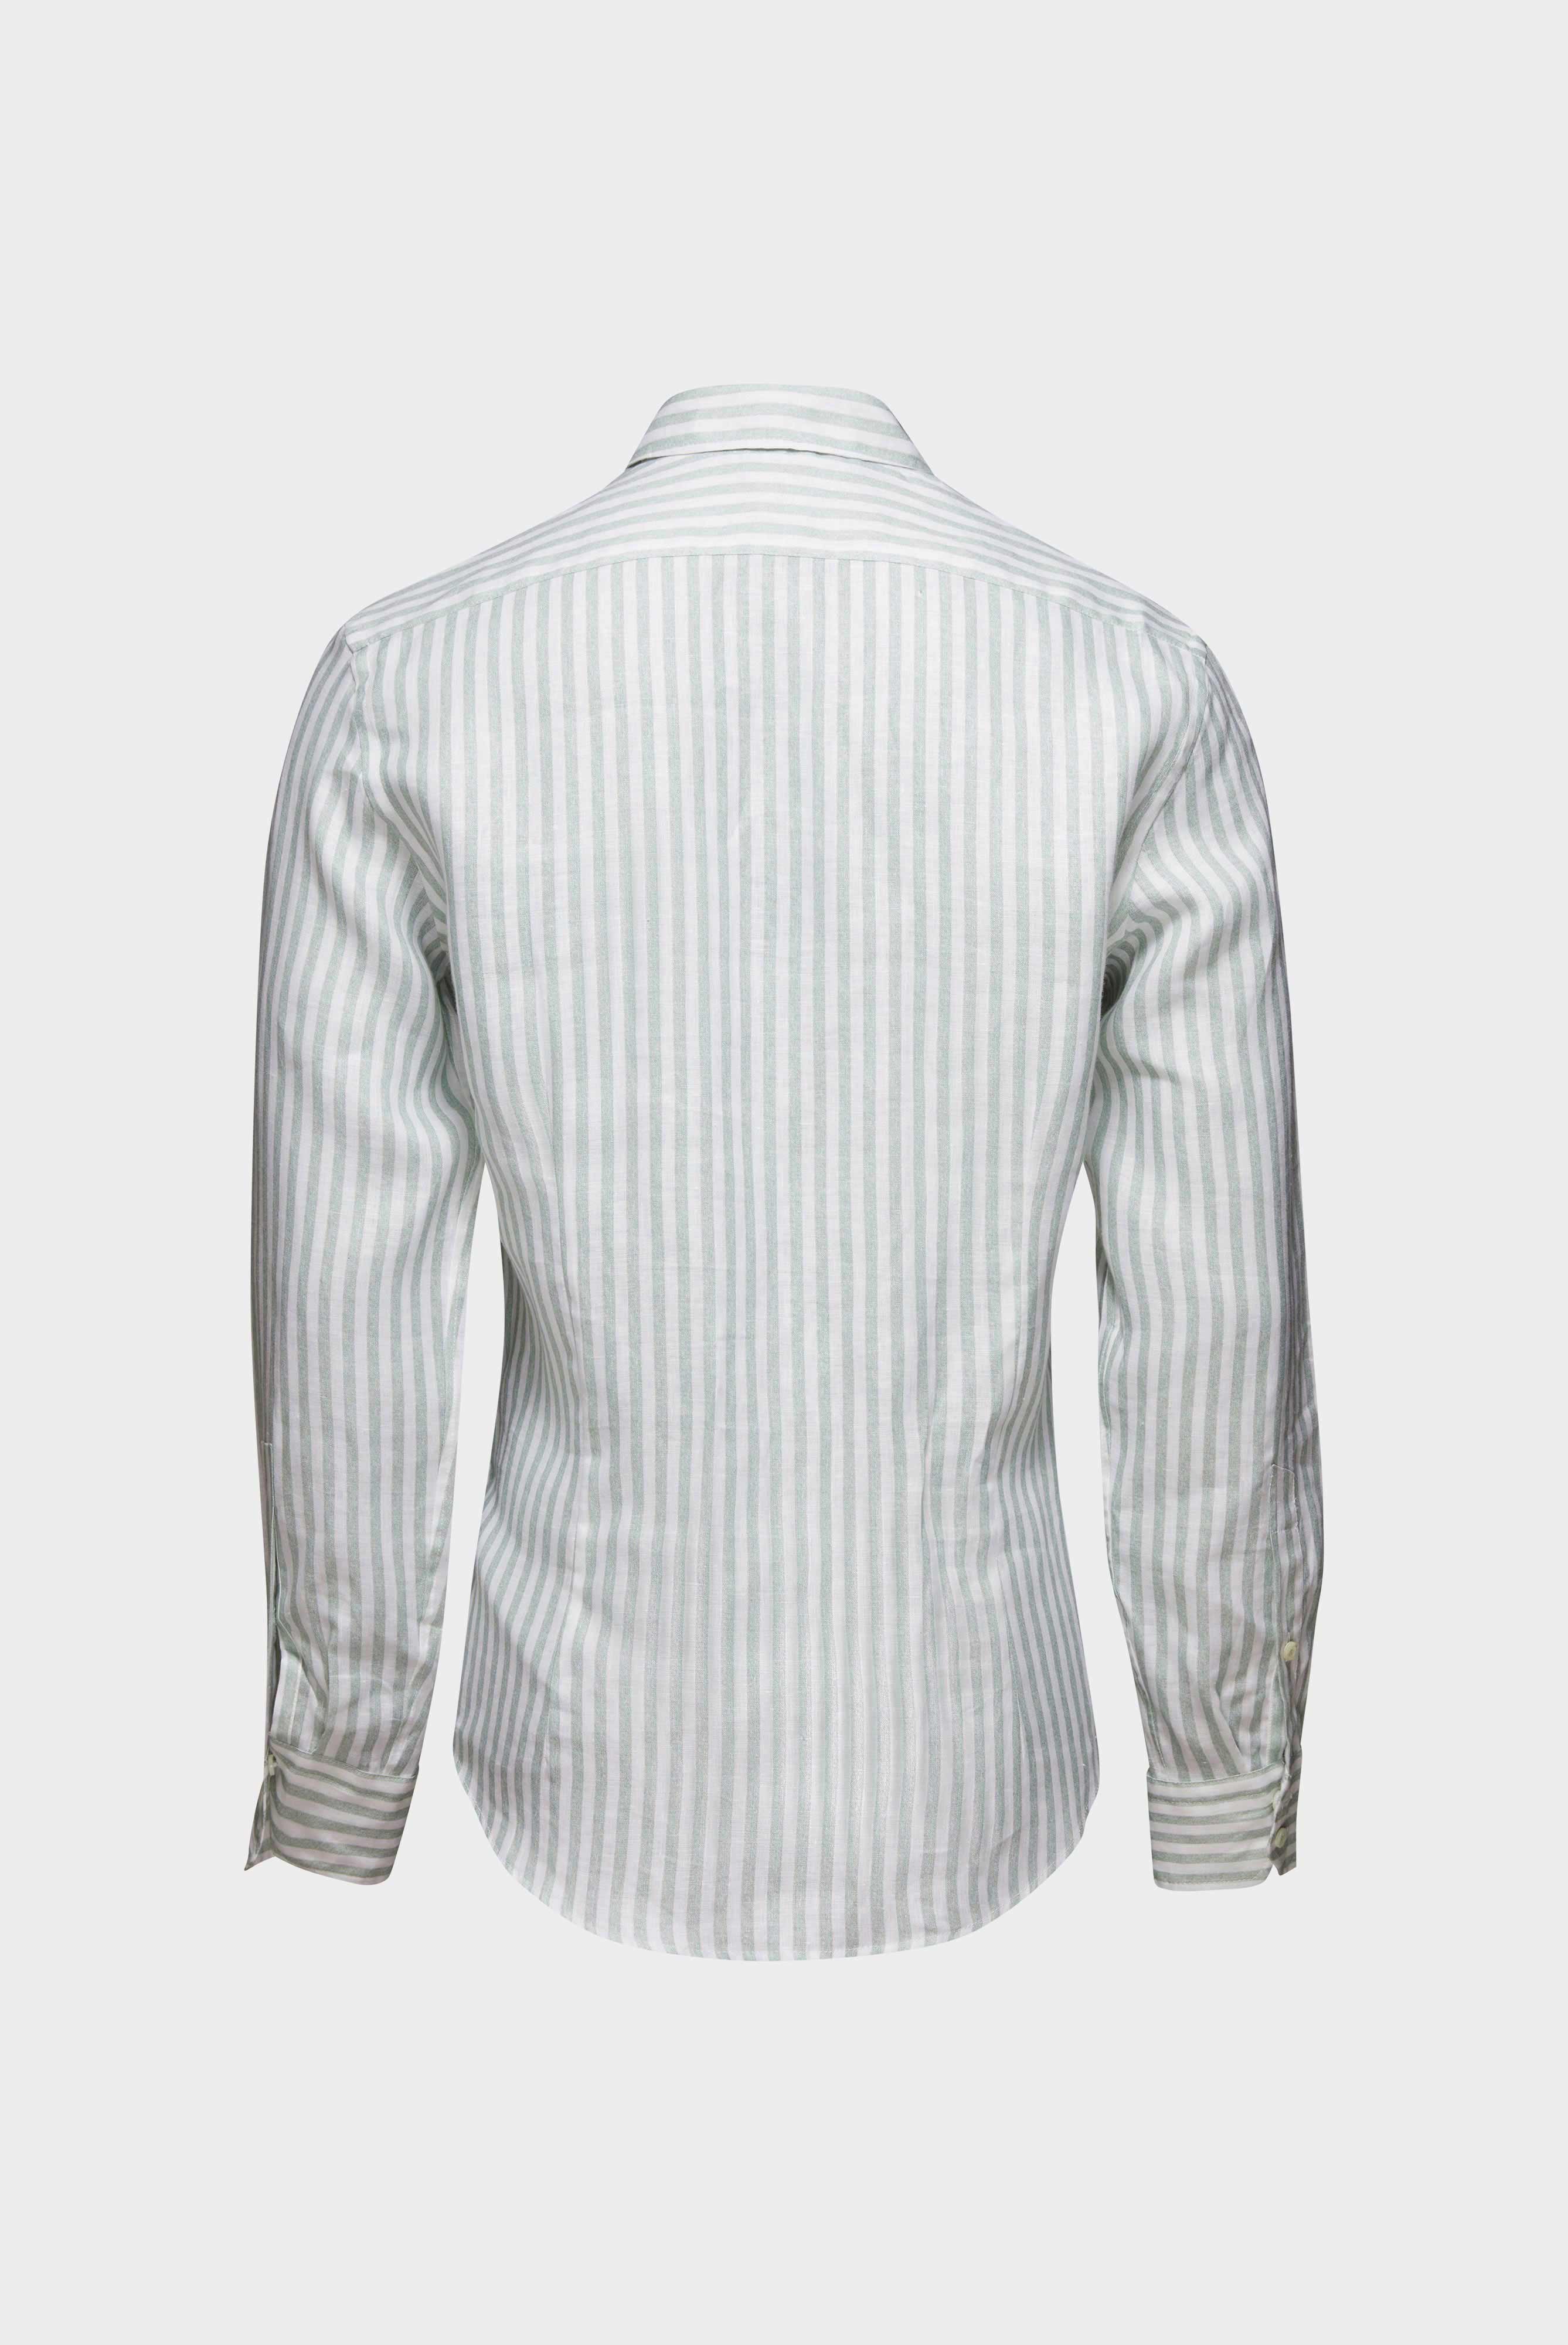 Casual Hemden+Leinenhemd mit Streifen-Druck Tailor Fit+20.2013.9V.170352.940.38